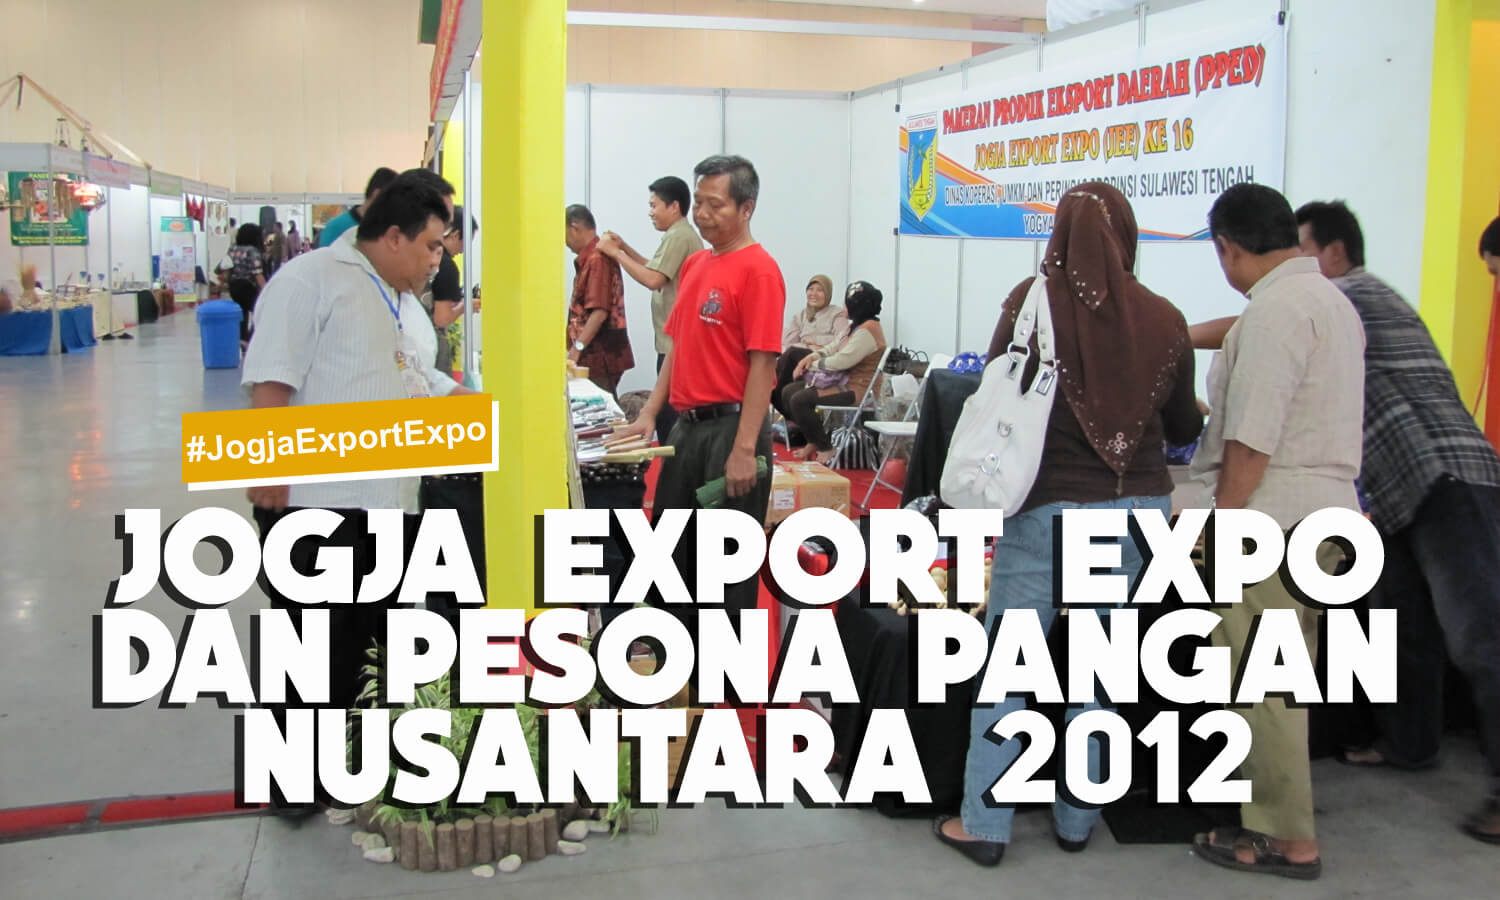 JOGJA EXPORT EXPO DAN PESONA PANGAN NUSANTARA